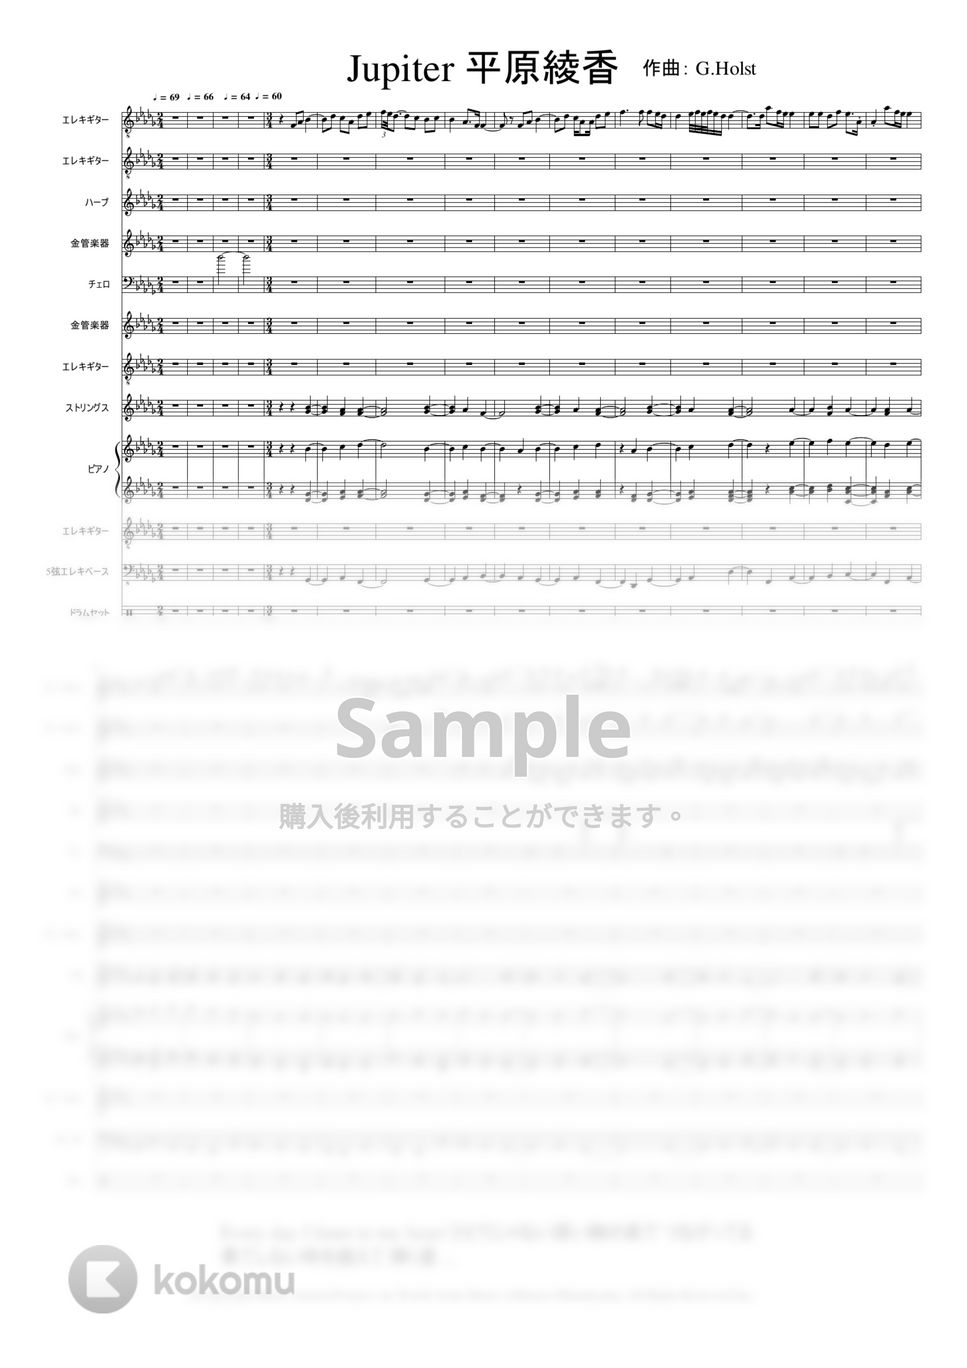 歌手：平原綾香 作曲:G.Holst - ジュピター  「Jupiter」 (クラシック音楽) by Mtsuru Minamiyama